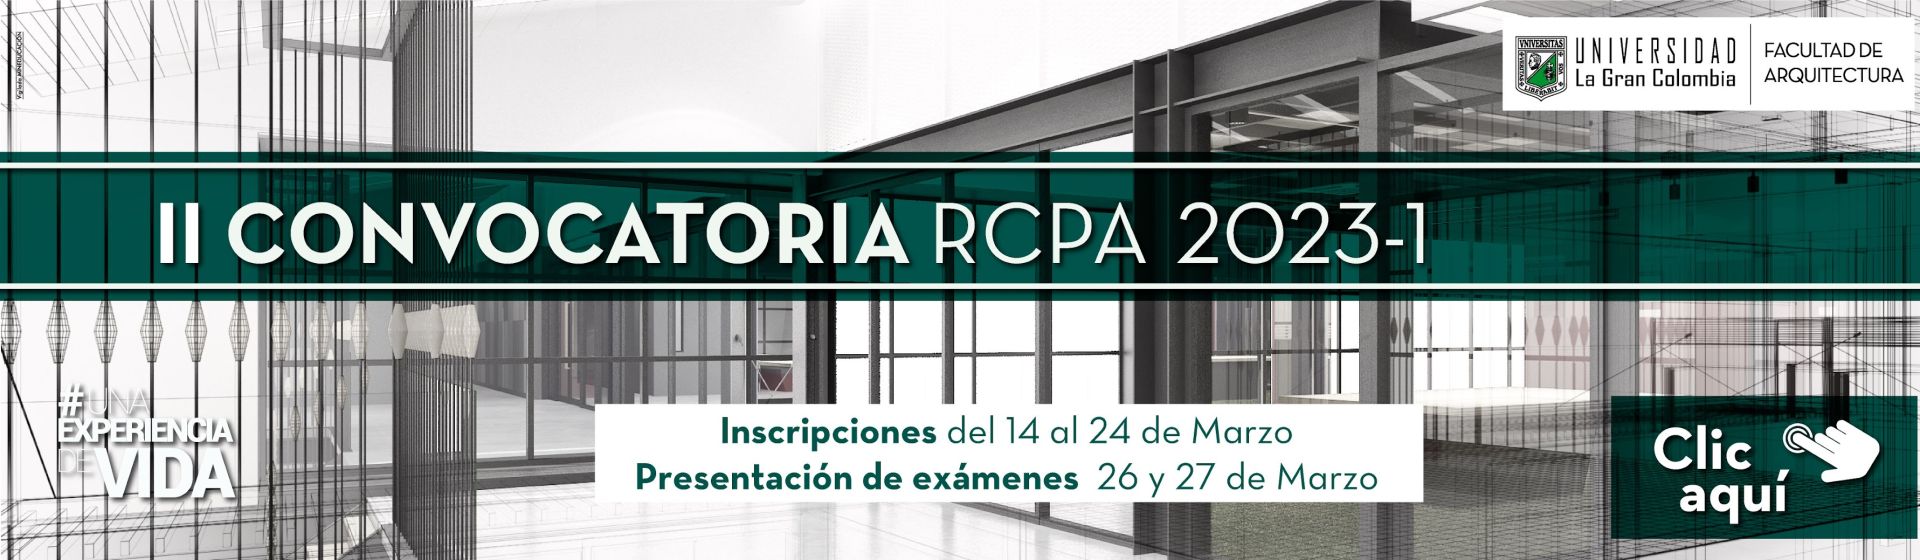 Convocatoria RCPA 2023-1